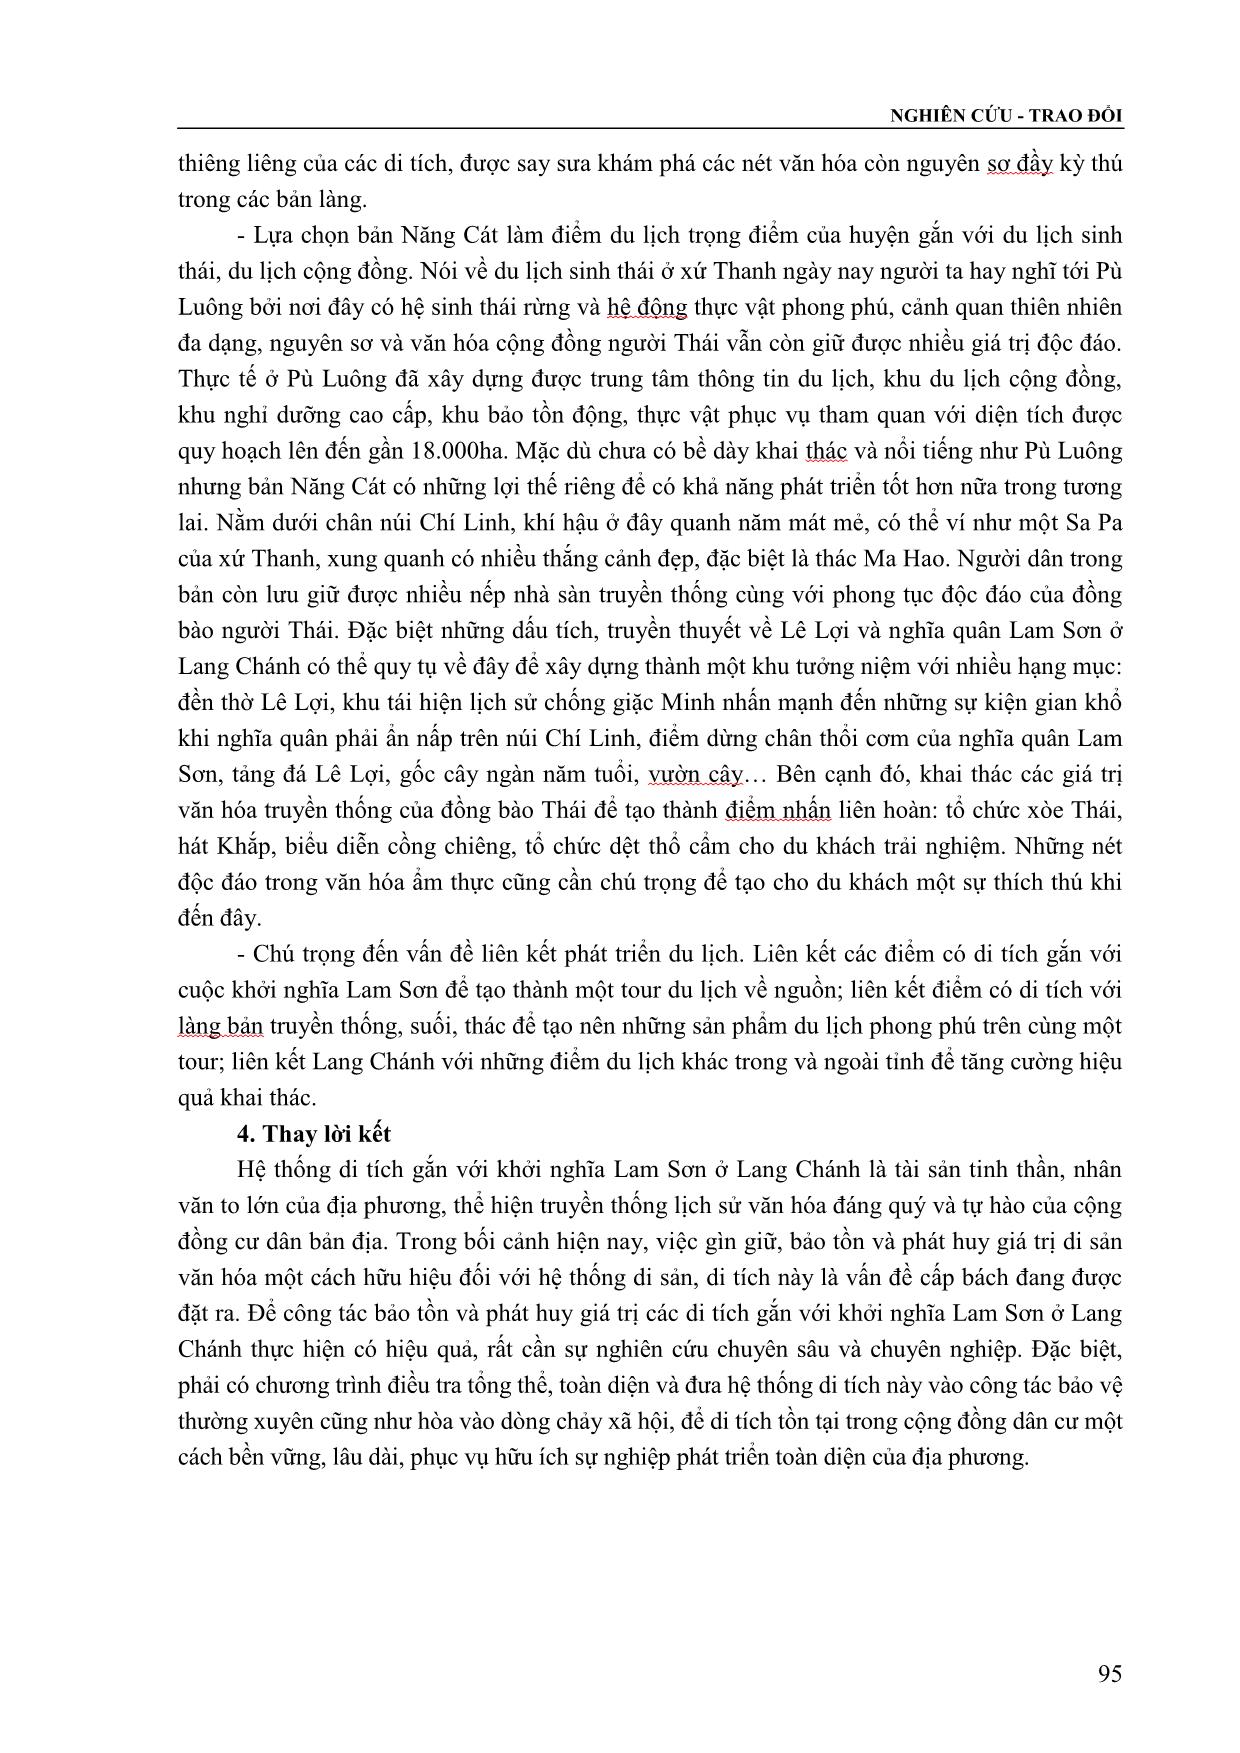 Di tích về cuộc khởi nghĩa Lam Sơn trên đất Lang Chánh và vấn đề phát huy giá trị trong hoạt động du lịch trang 7